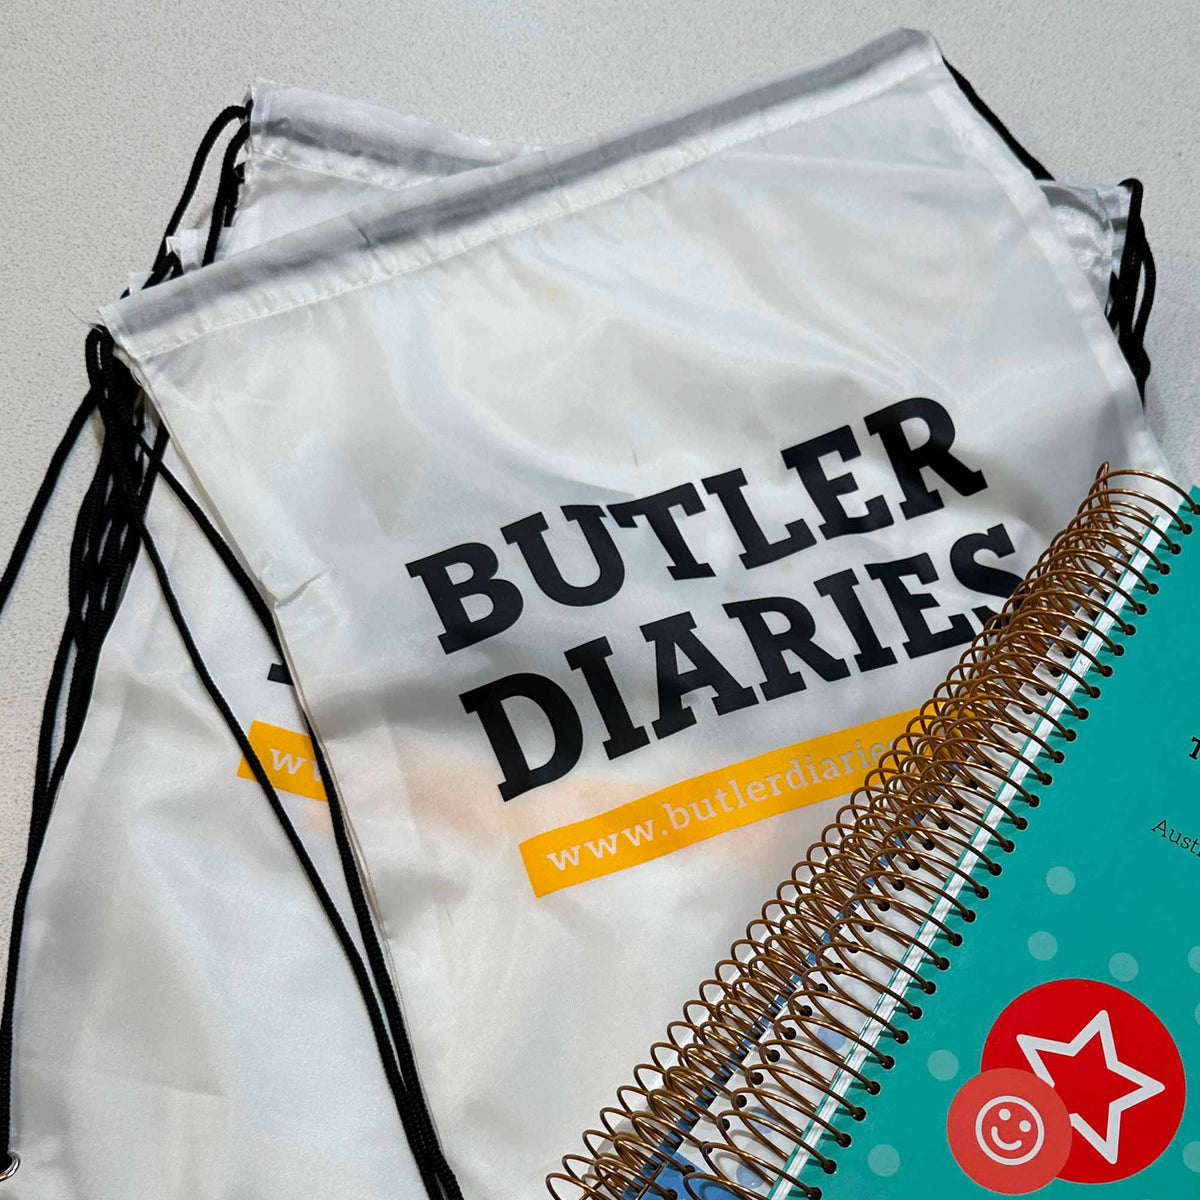 Butler Diary Bag